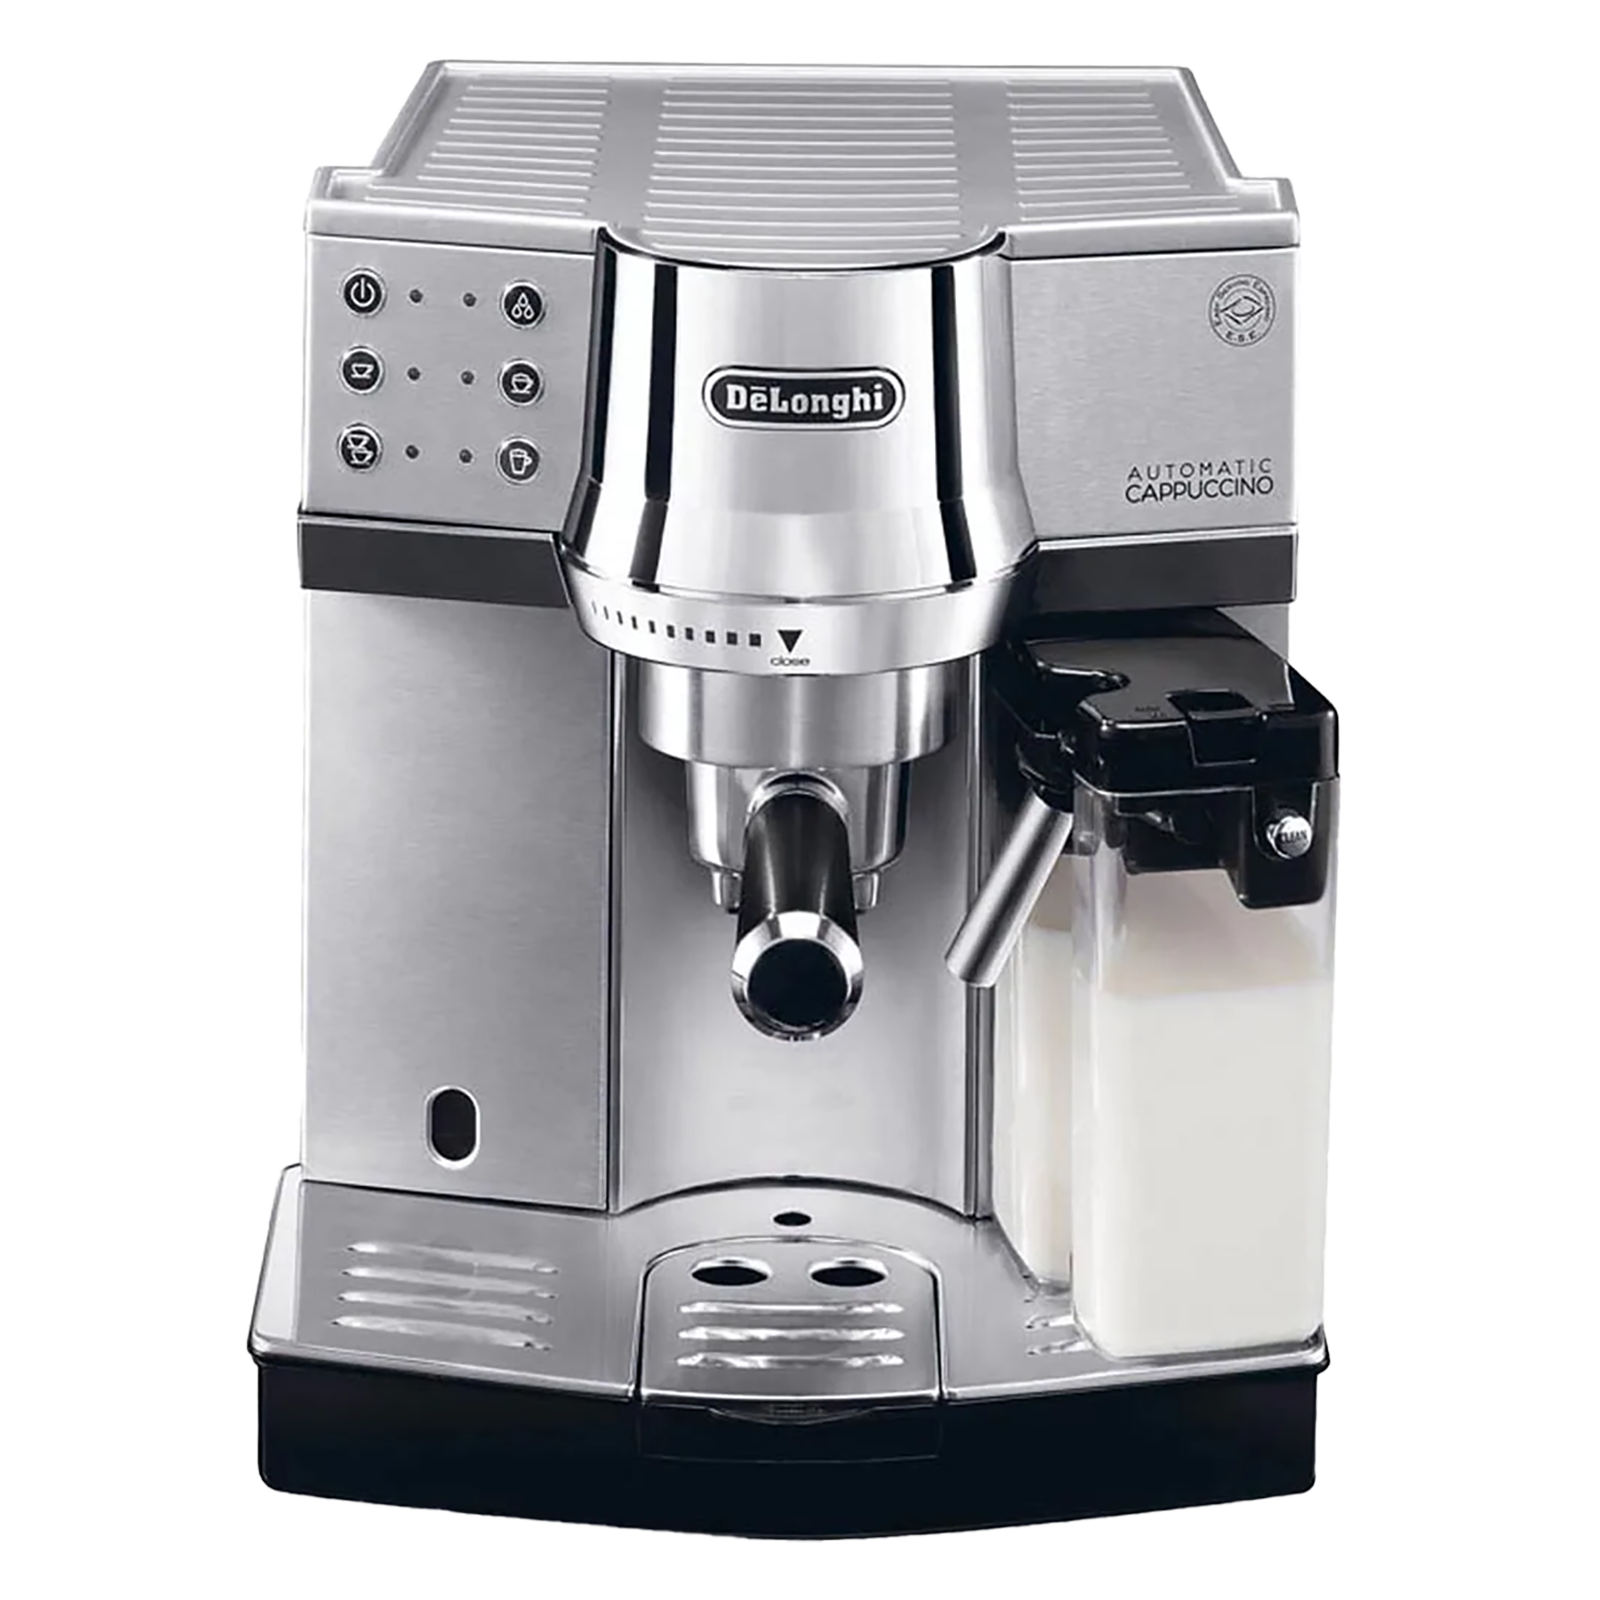 DeLonghi Pump Espresso and Cappuccino 2 Cups Semi-Automatic Coffee Maker (Makes Expresso and Cappuccino Coffee, EC850, Metallic)_1